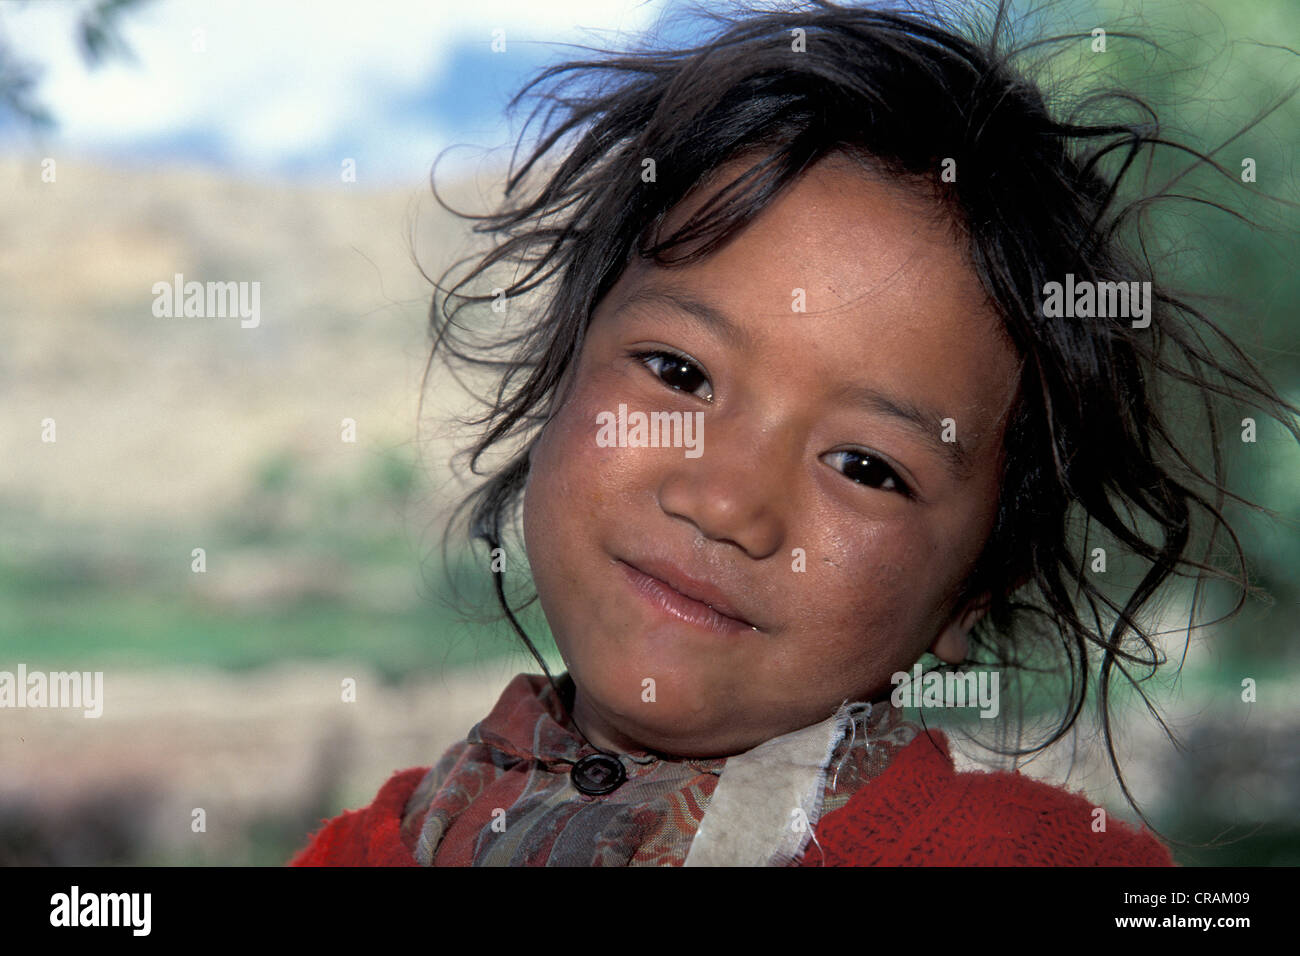 Girl, portrait, Dhankar, Spiti, Himachal Pradesh, Inde himalayenne, l'Inde du Nord, Inde, Asie Banque D'Images